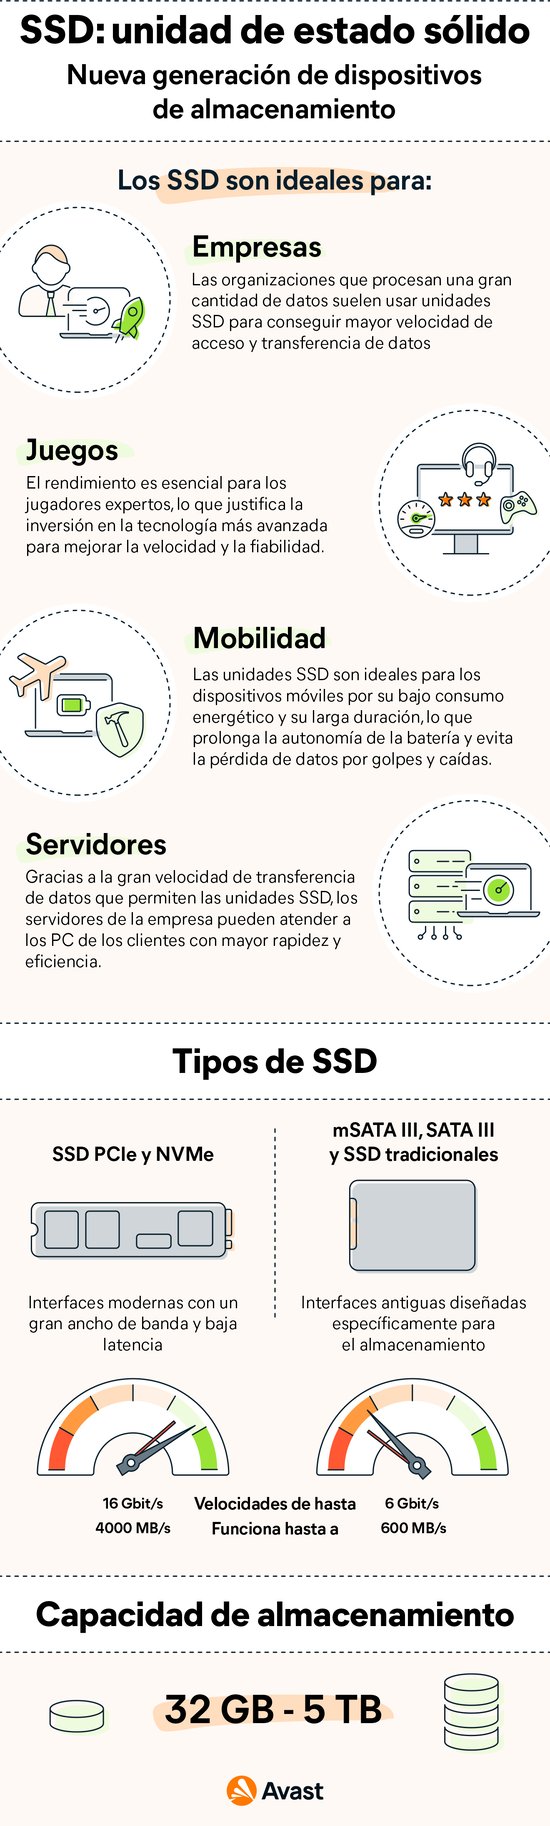 SSD: ¿Qué es y para qué sirve? - Definición